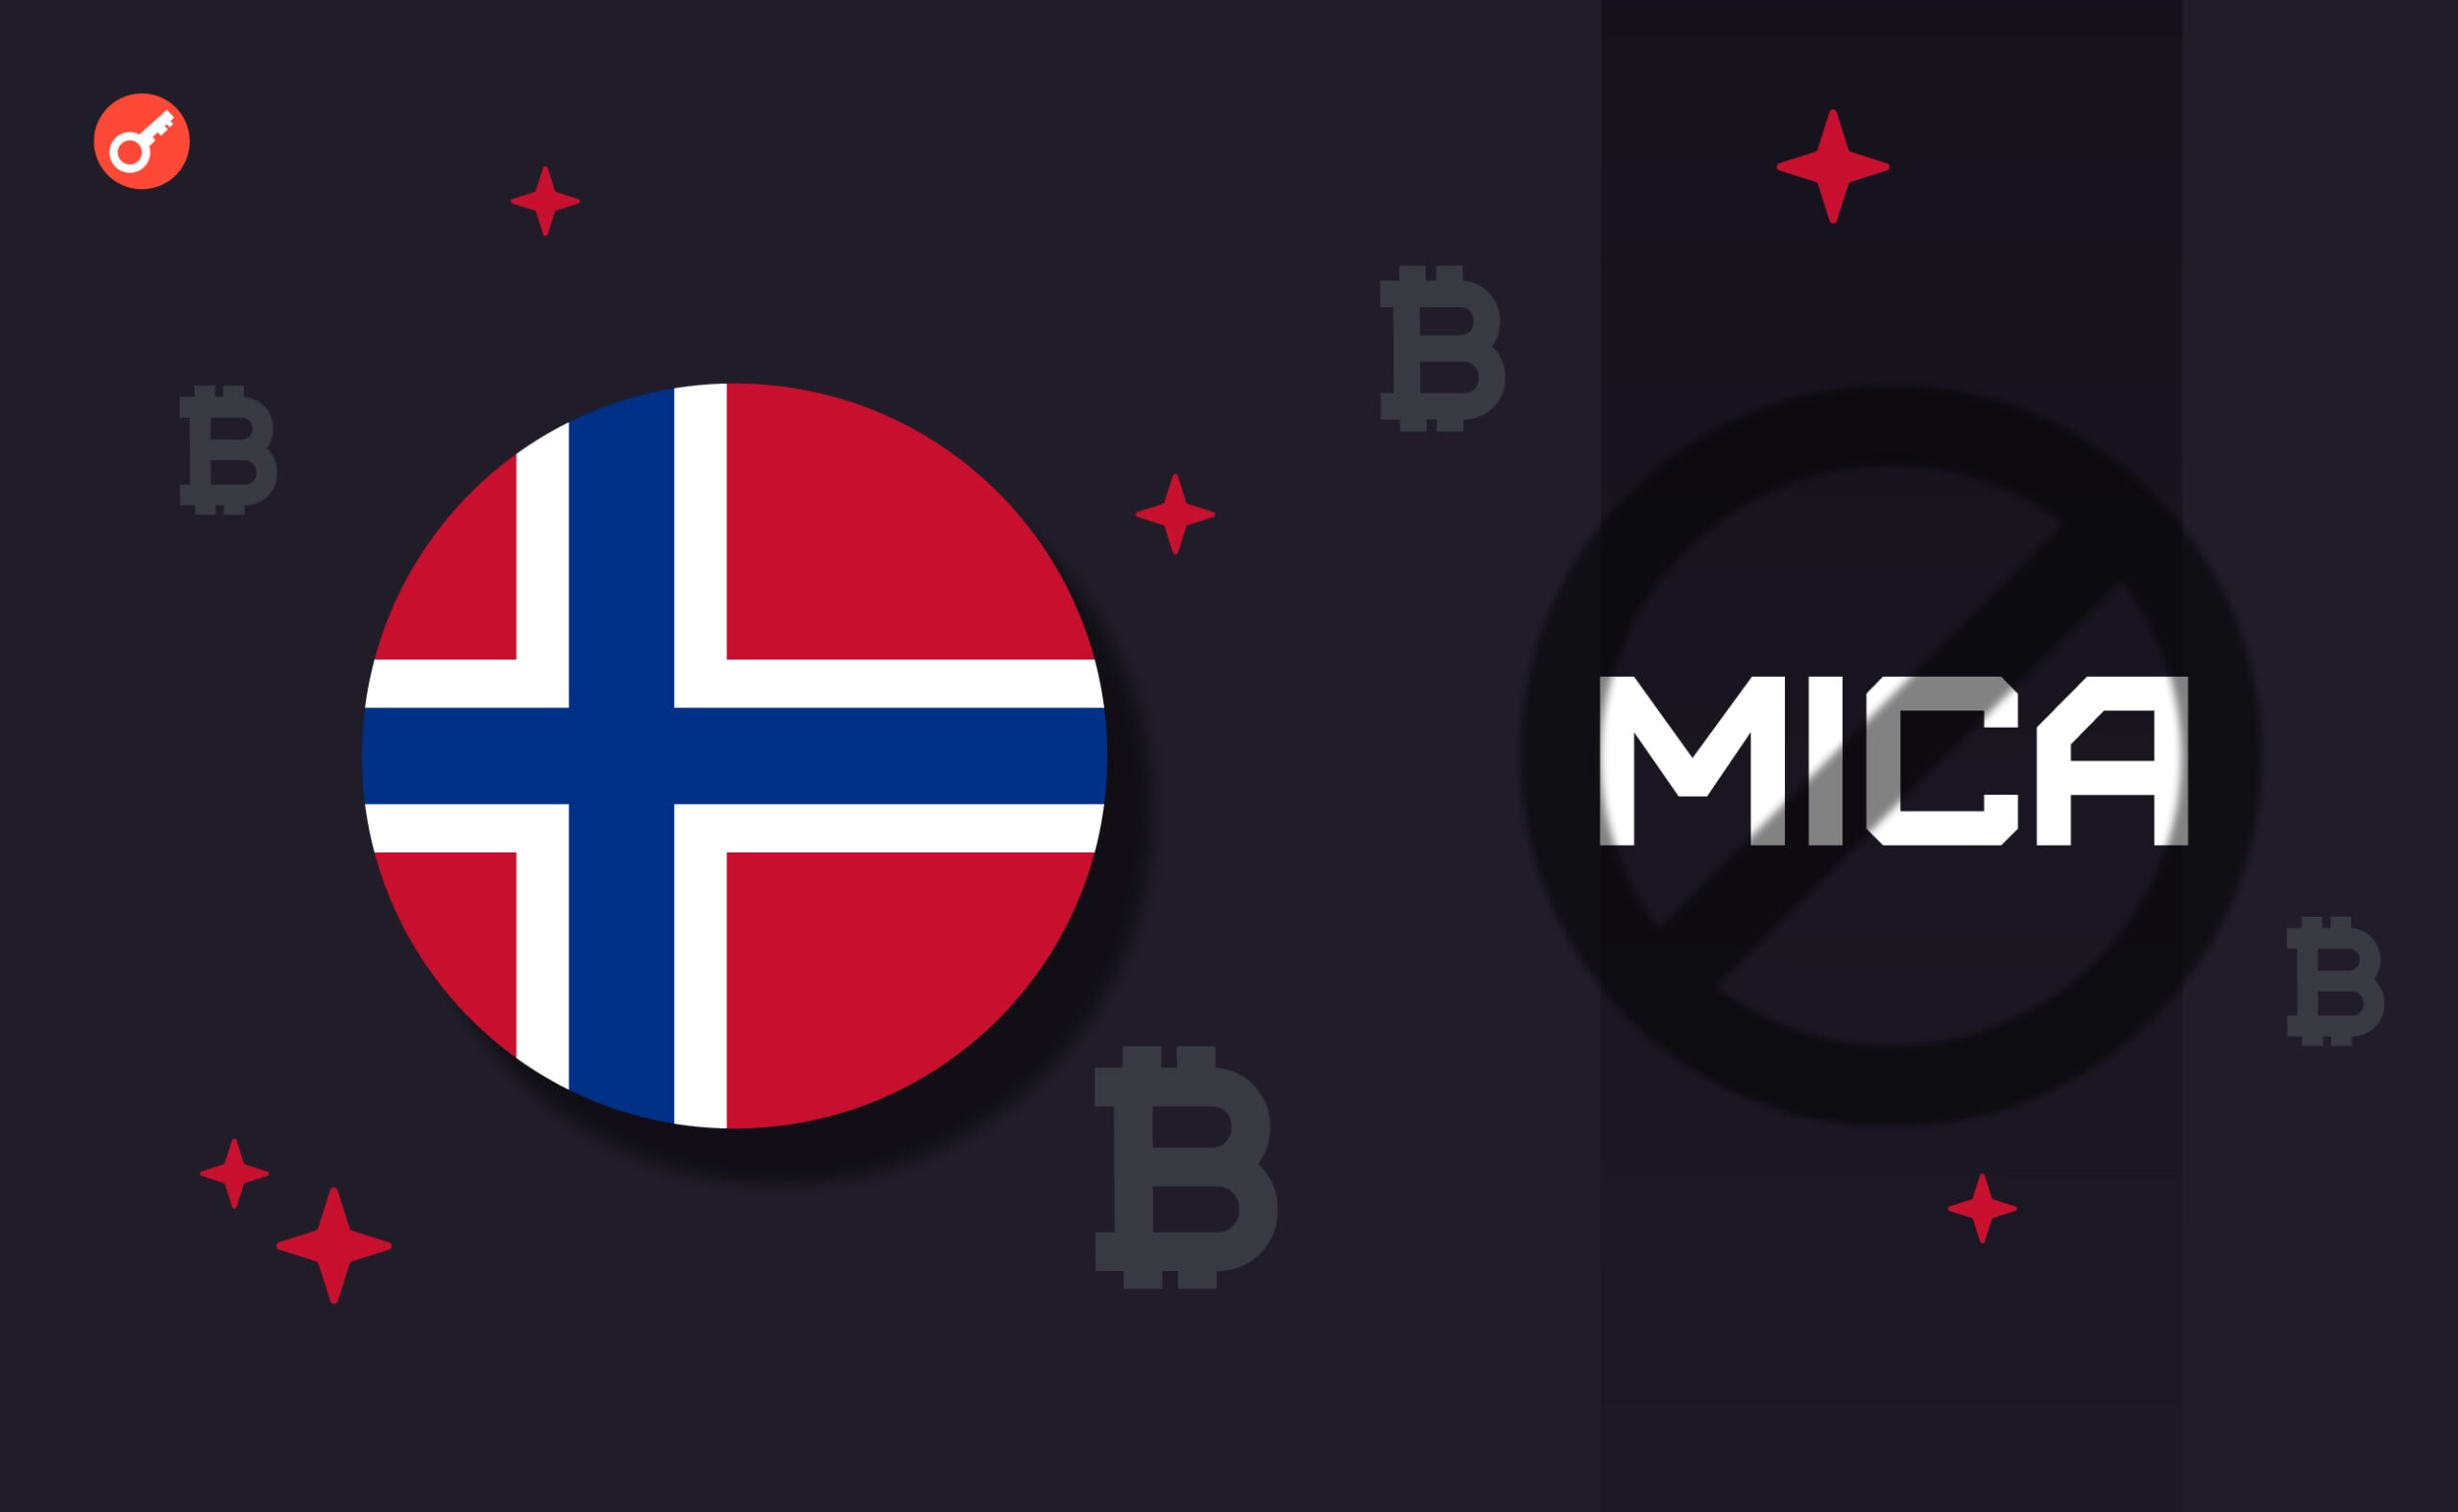 Норвегия рассмотрит собственную крипто-доктрину без MiCA. Заглавный коллаж новости.